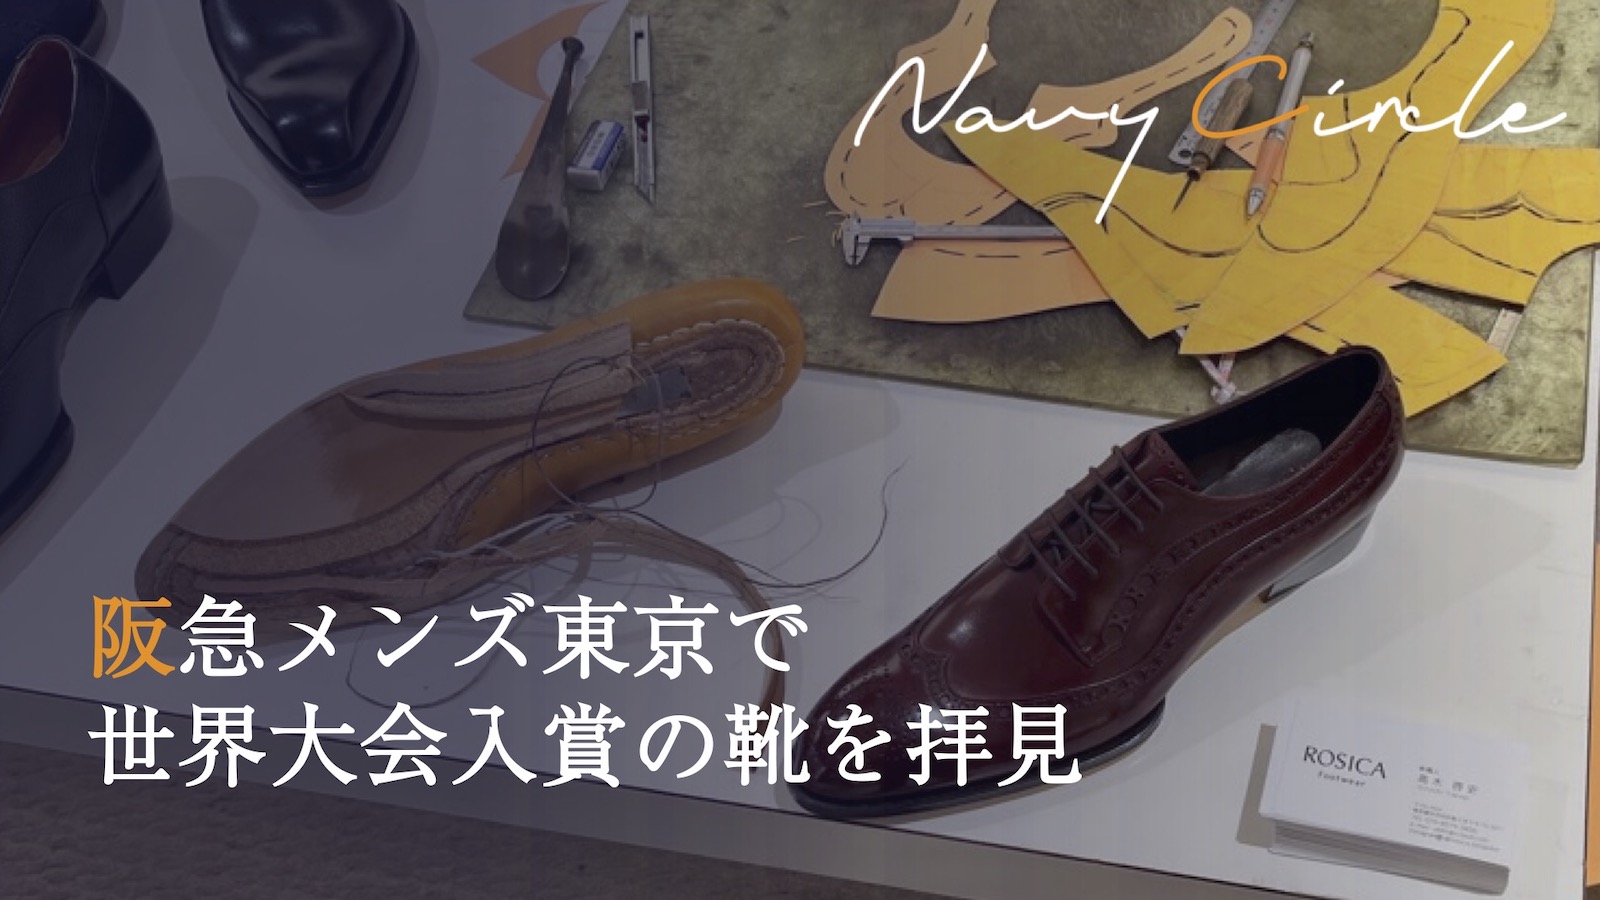 阪急メンズ東京で世界大会入賞の靴を拝見 | An award-winning shoemaker and his shoes, found at Hankyu Men's Tokyo